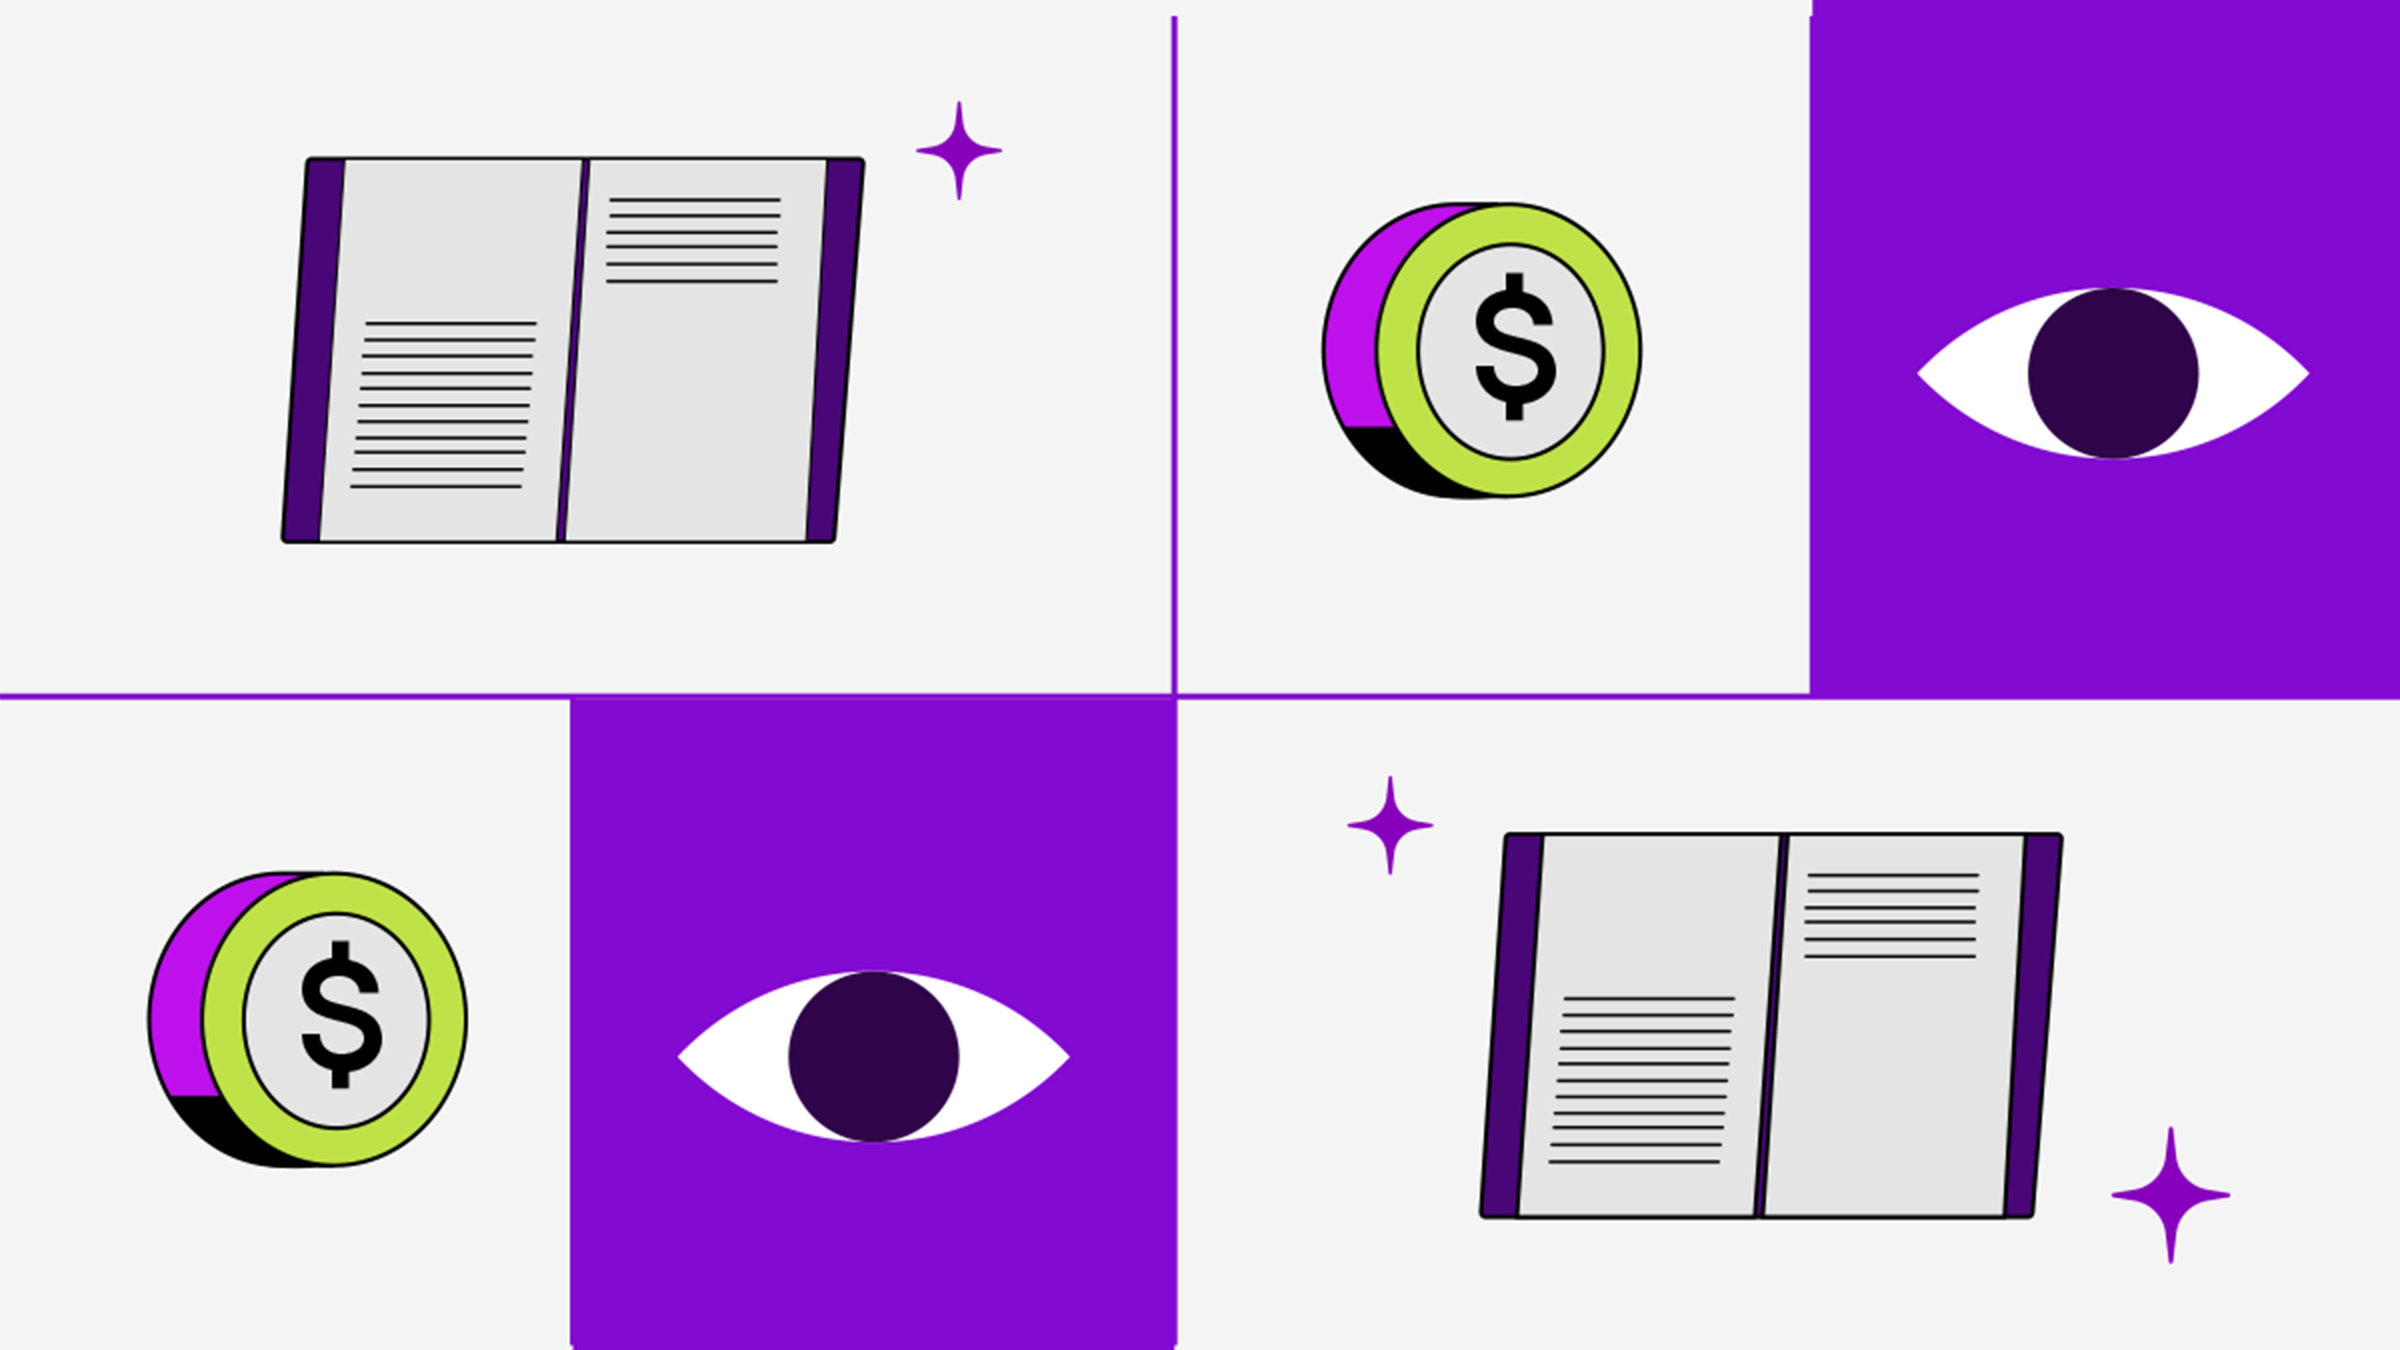 Un ojo, un libro abierto y el signo pesos. ¿Por qué es importante la educación financiera?